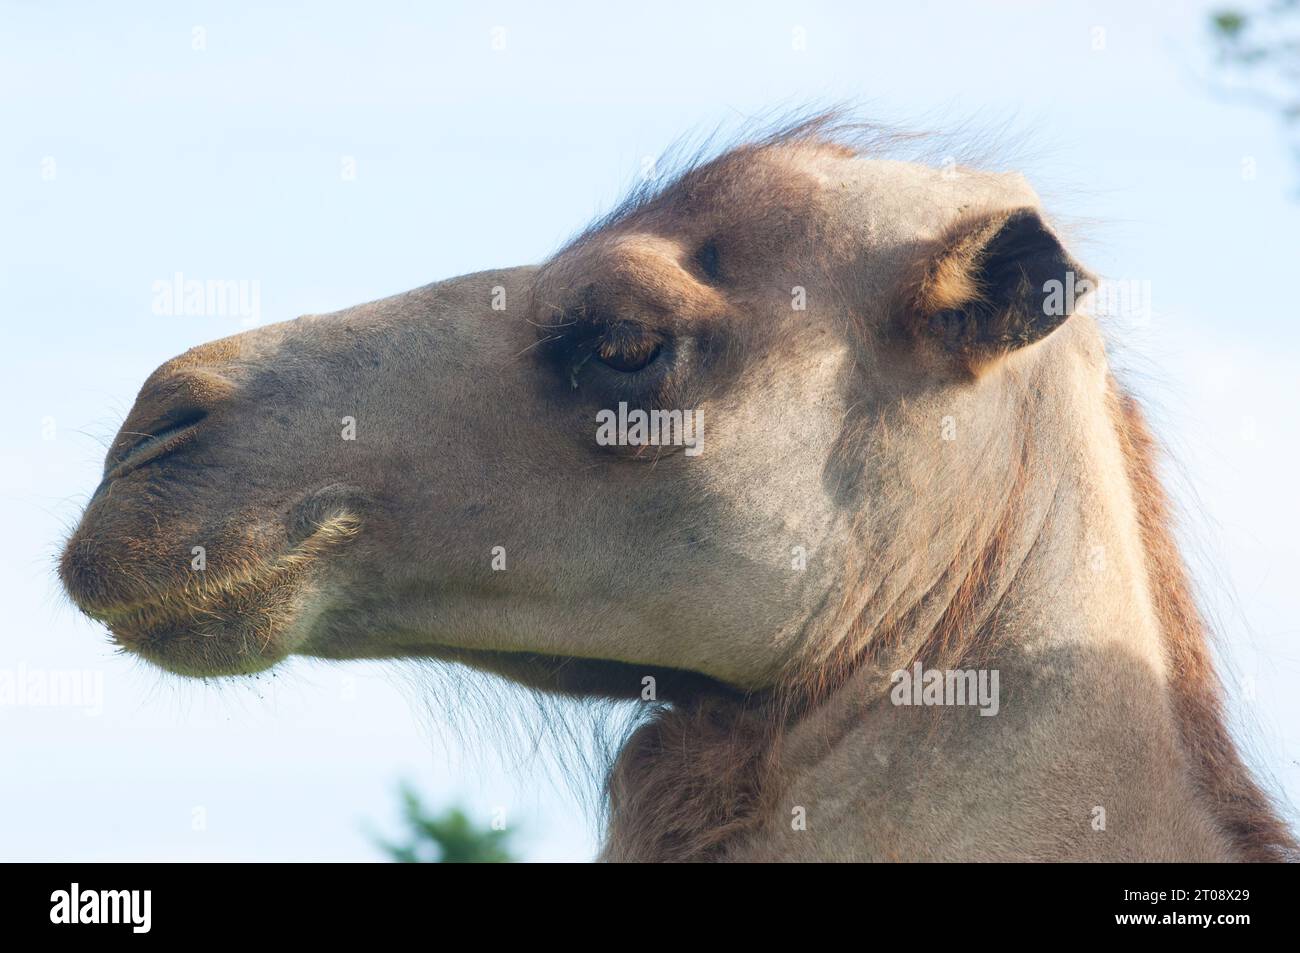 Primer plano de la cara de un camello disparado en una granja en el Reino Unido - John Gollop Foto de stock